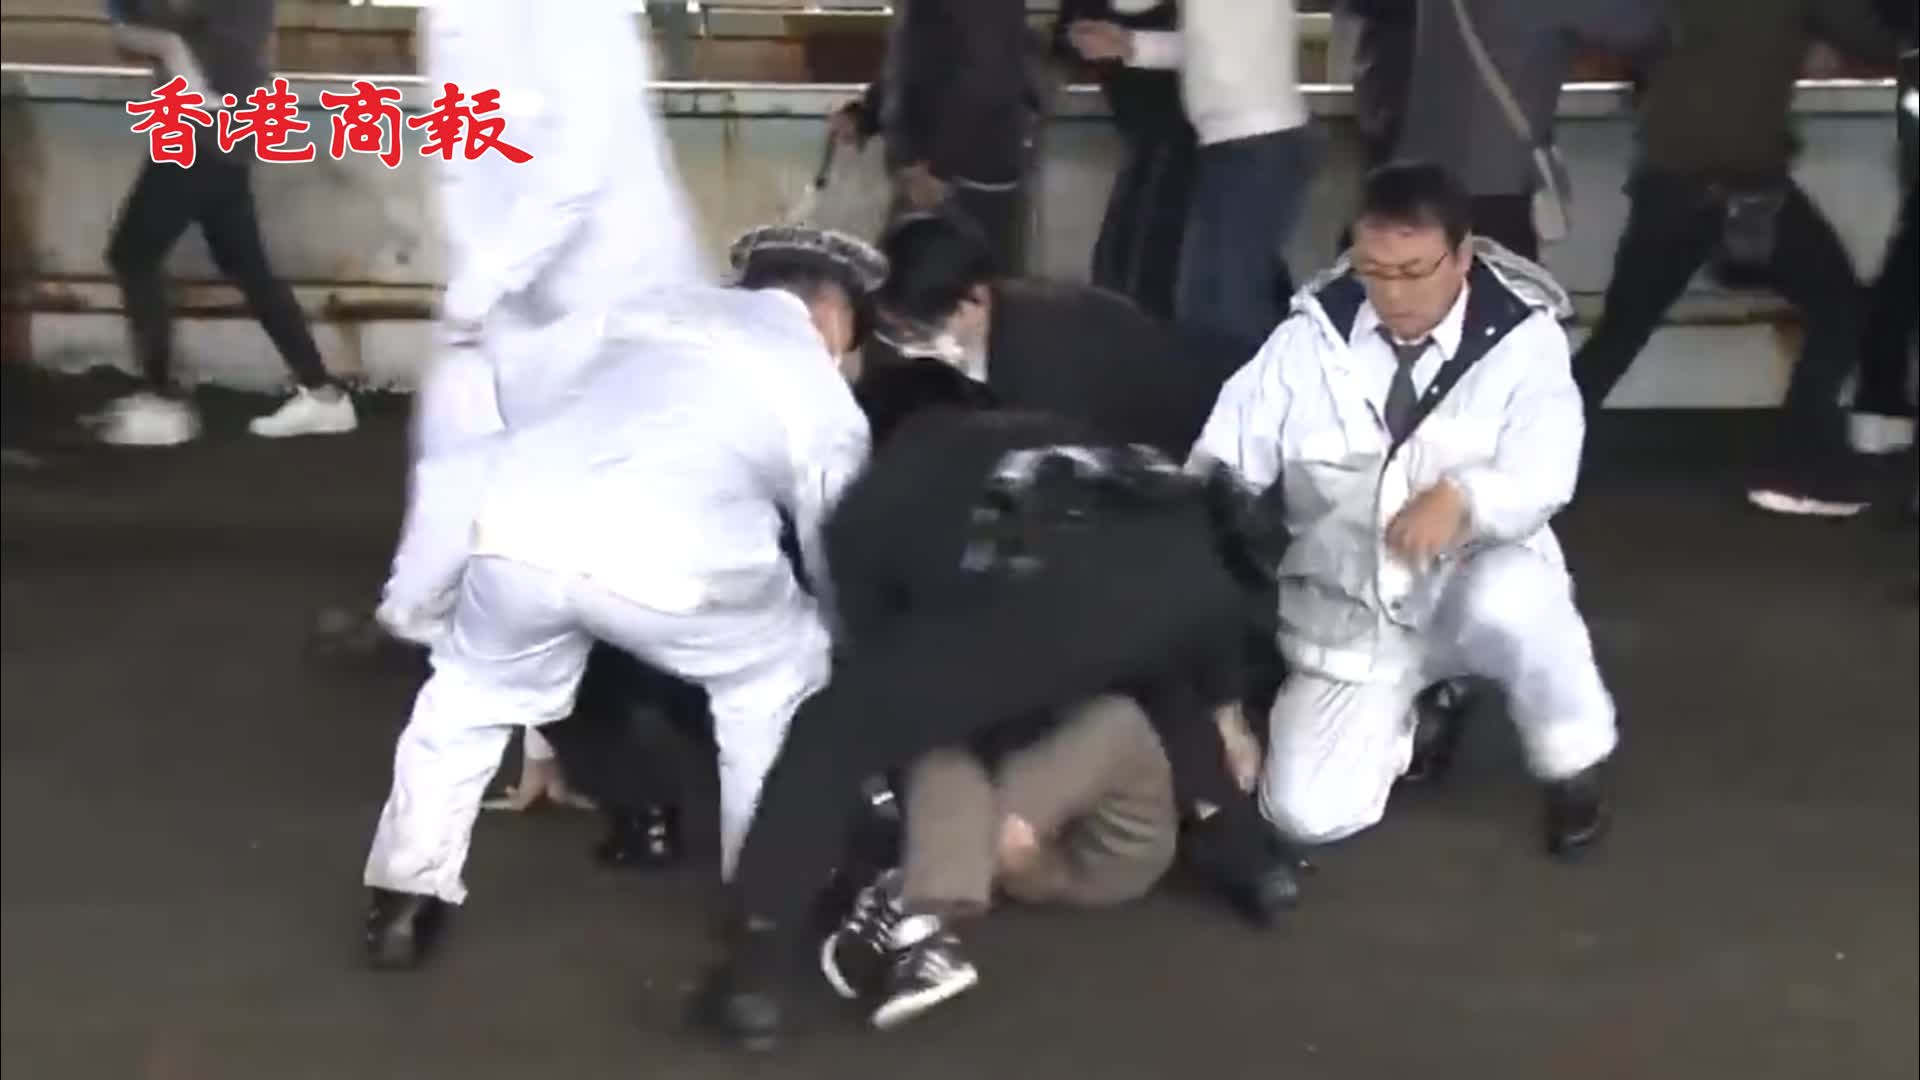 有片 | 日本首相岸田在演講現場發生爆炸 嫌疑人疑似投擲煙霧彈